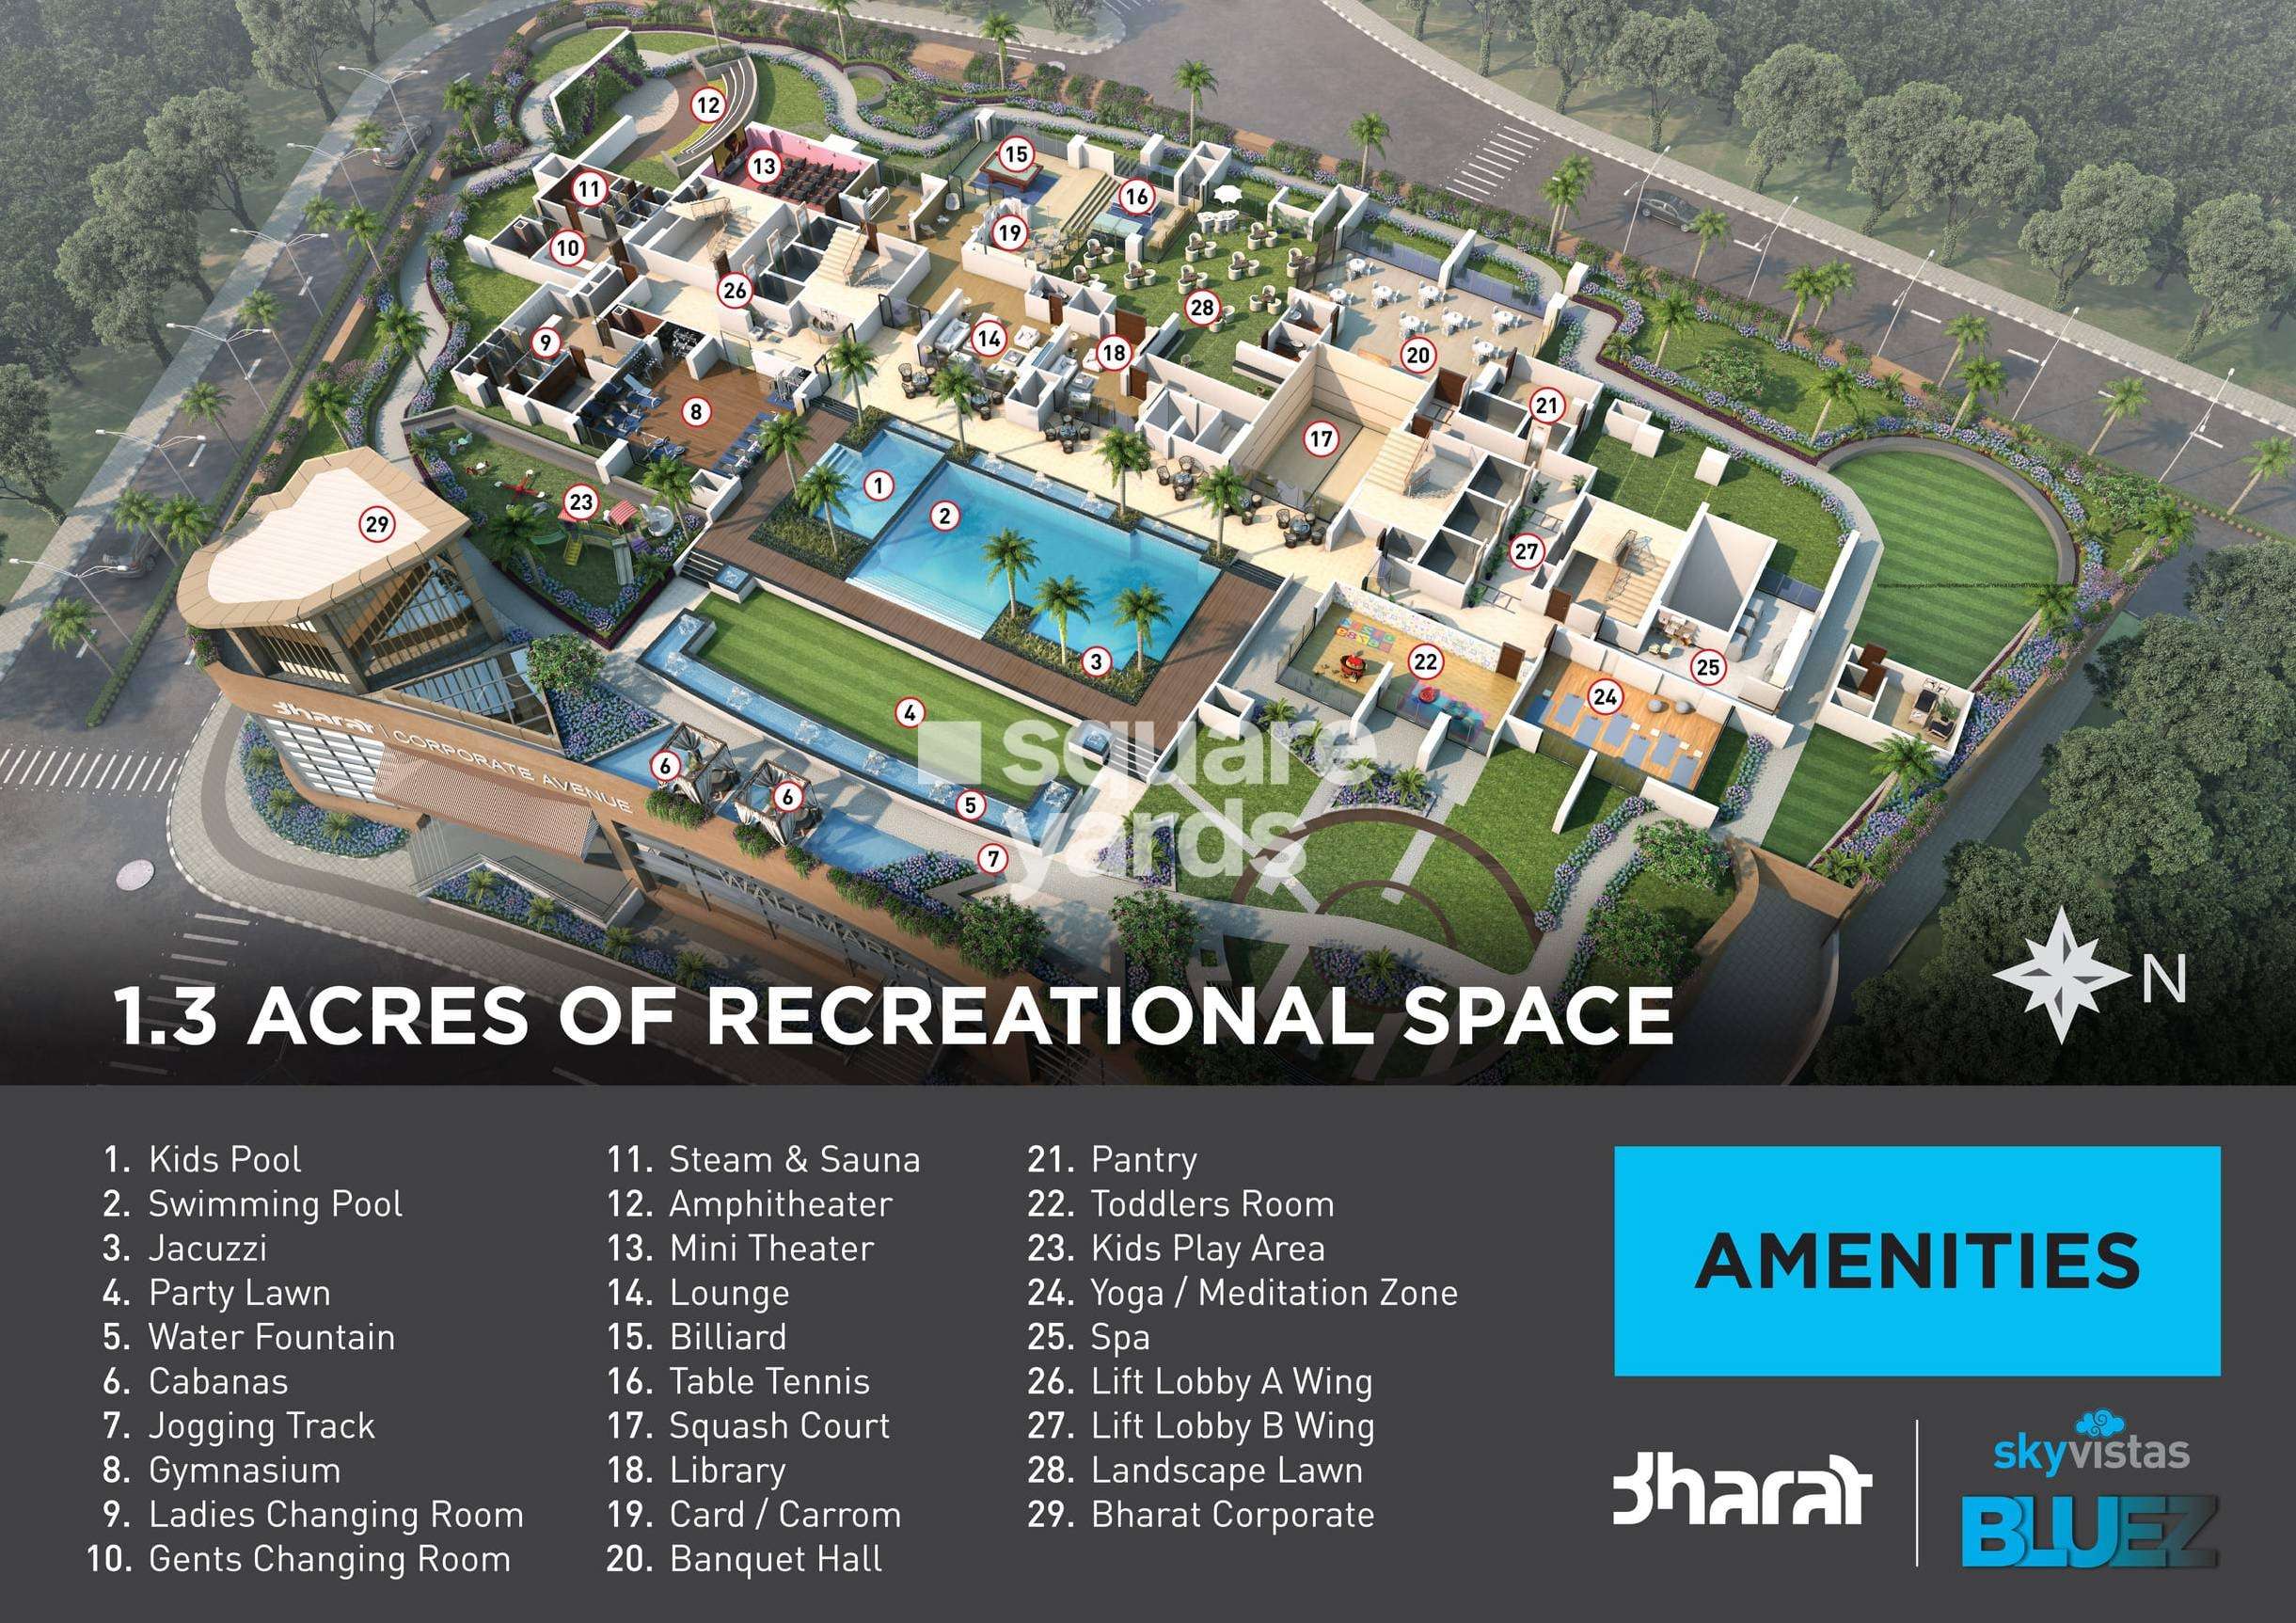 bharat skyvistas project amenities features6